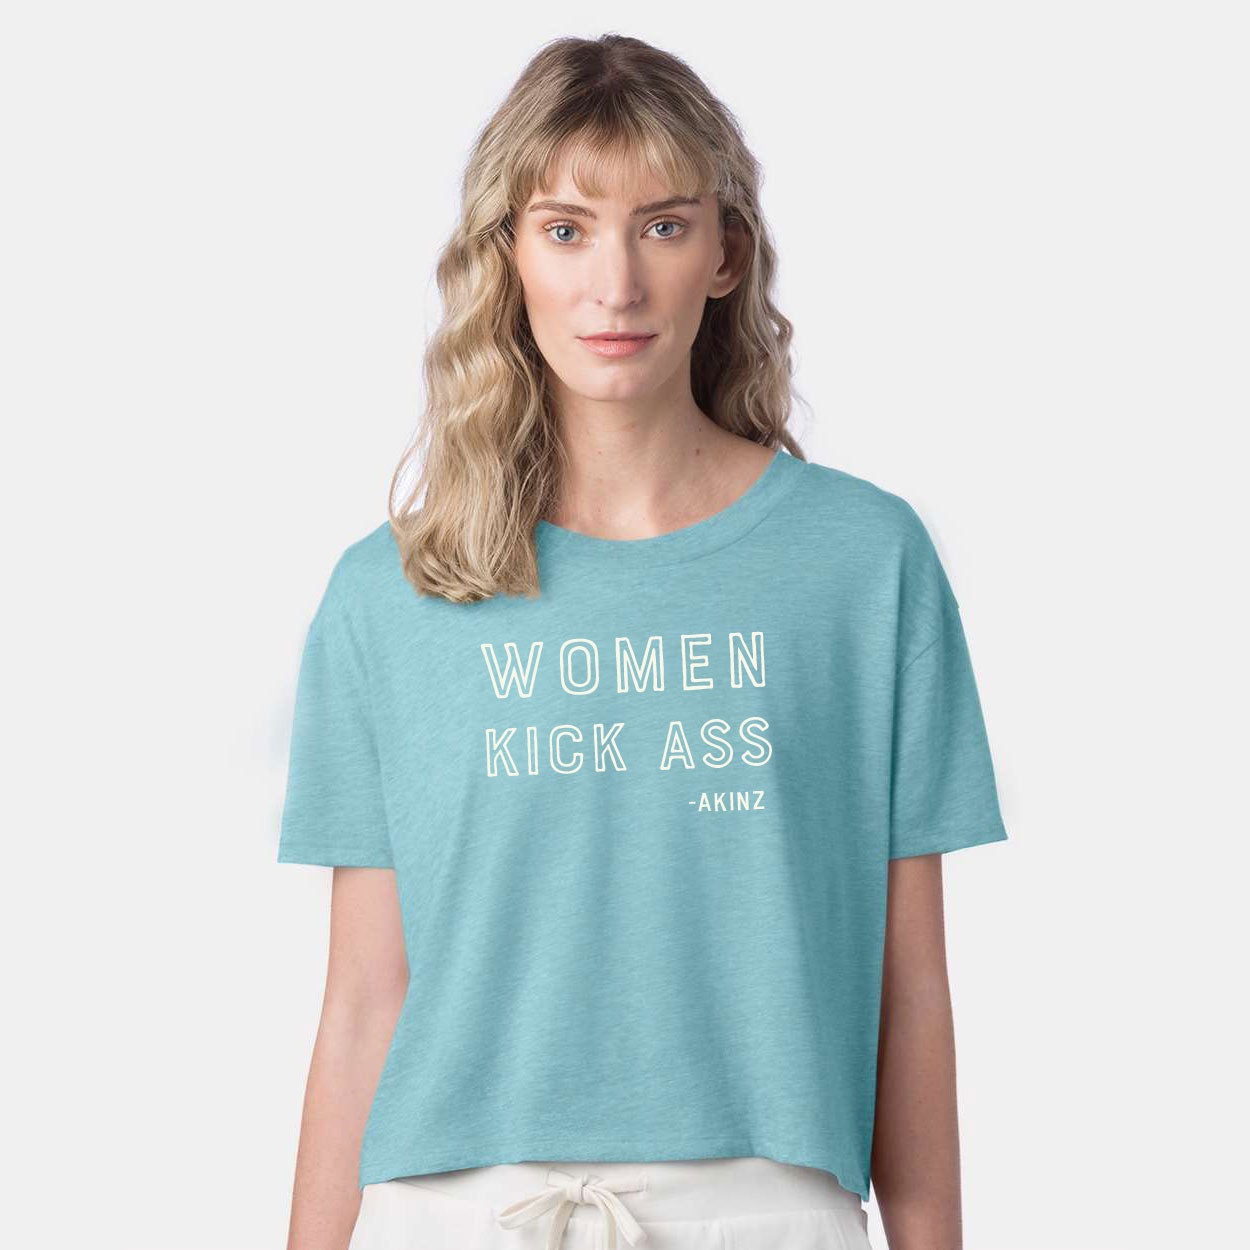 women-kick-ass-crop-turquoise.jpg